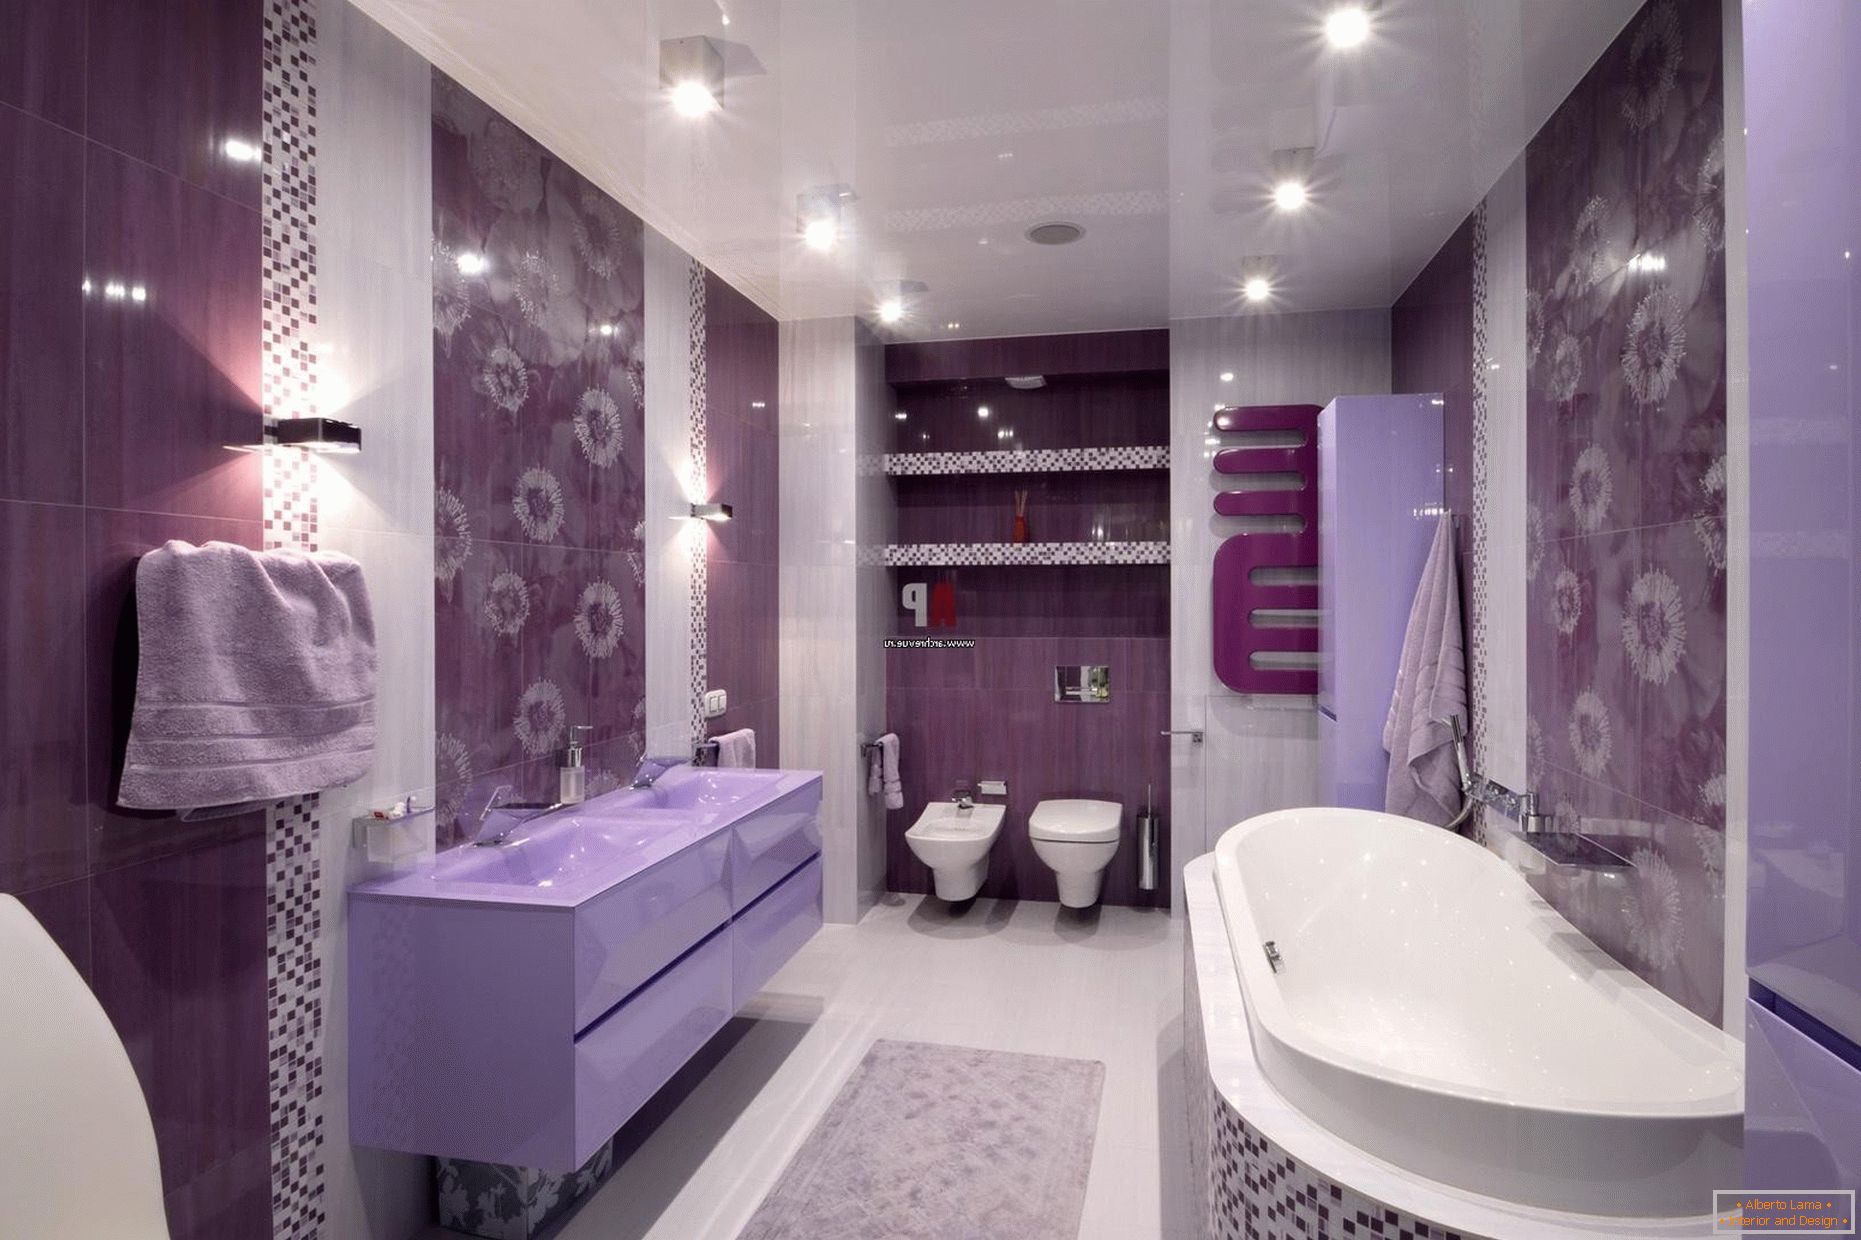 Lussuoso design del bagno in fiori lilla